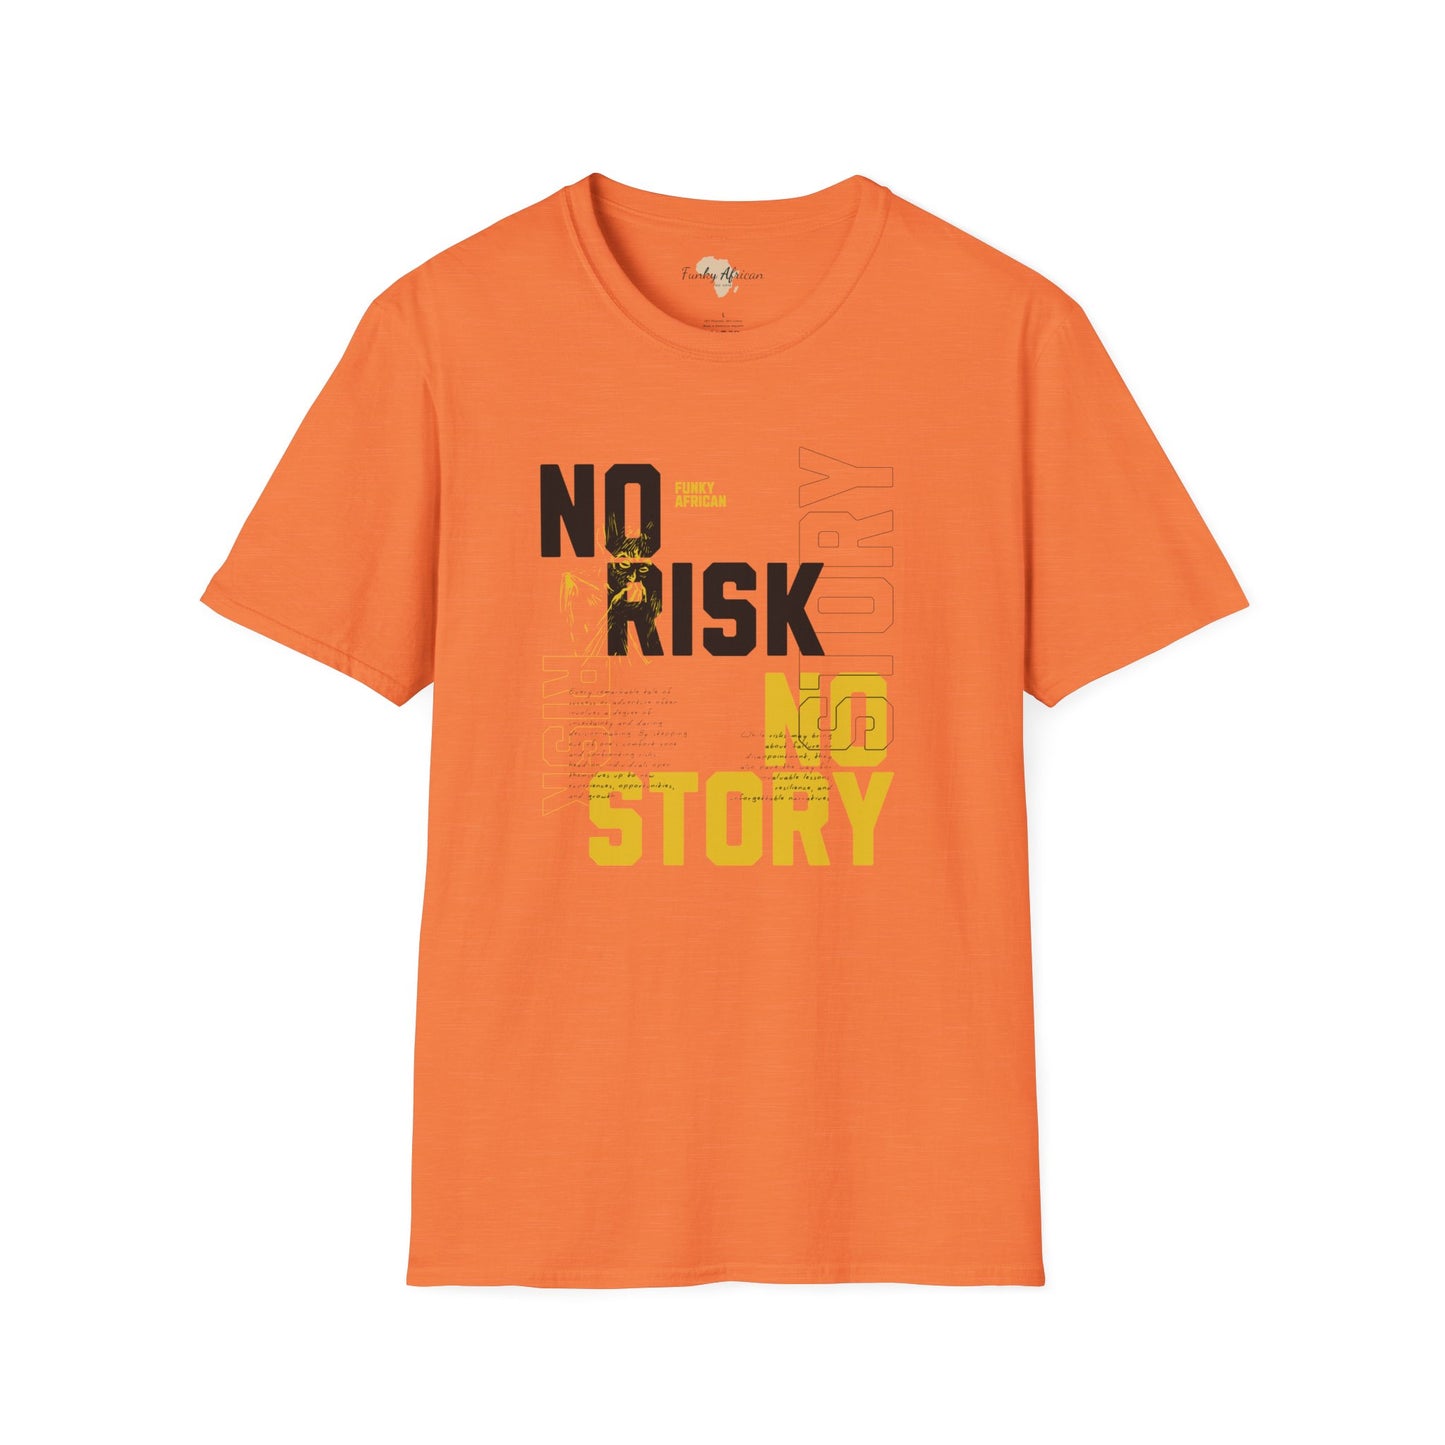 No risk No story unisex tee